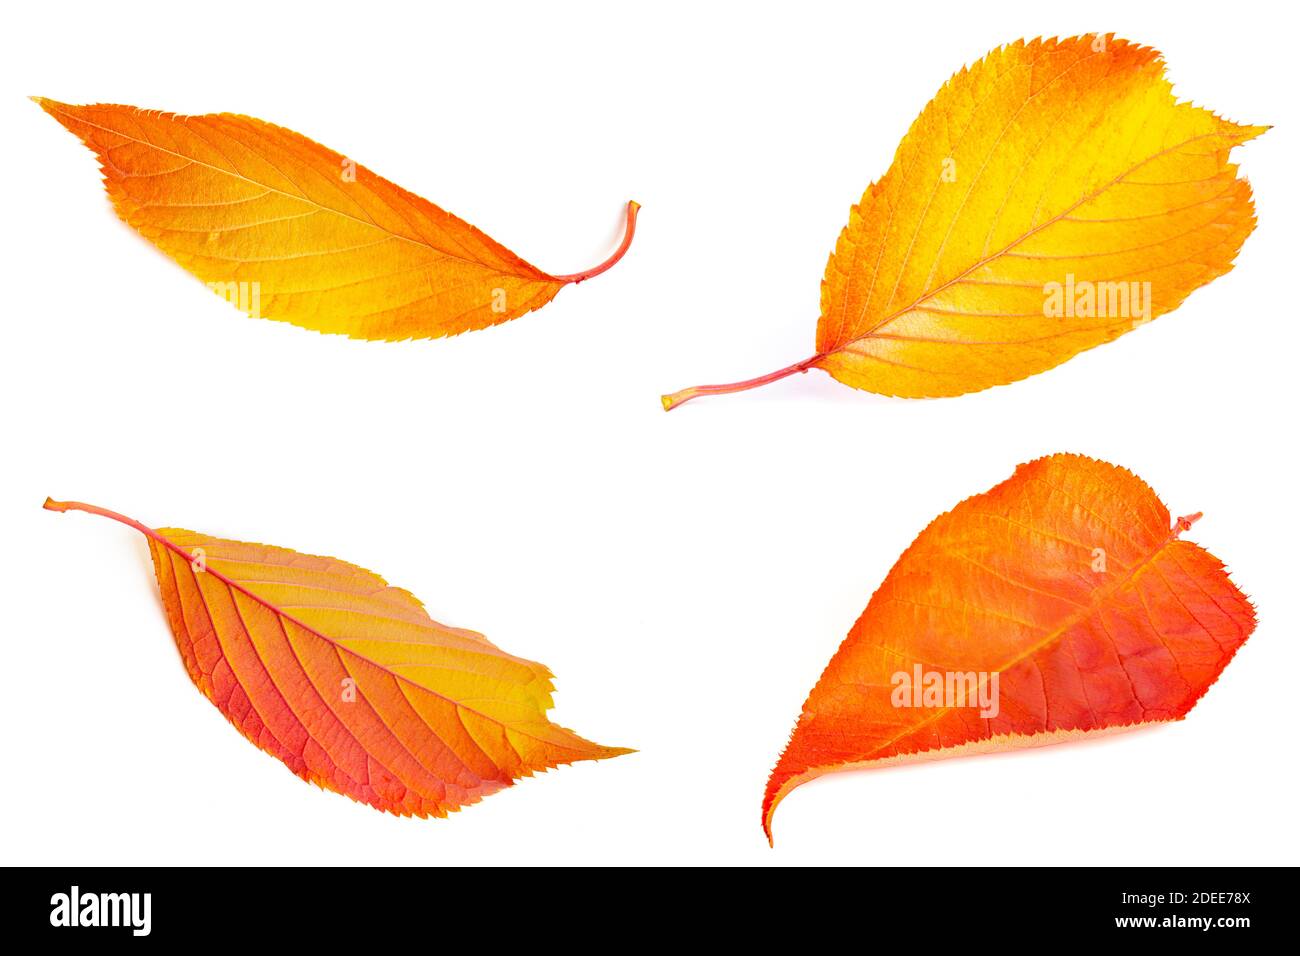 Coloridas hojas de otoño y otoño en amarillo dorado, naranja y rojo aisladas sobre blanco Foto de stock